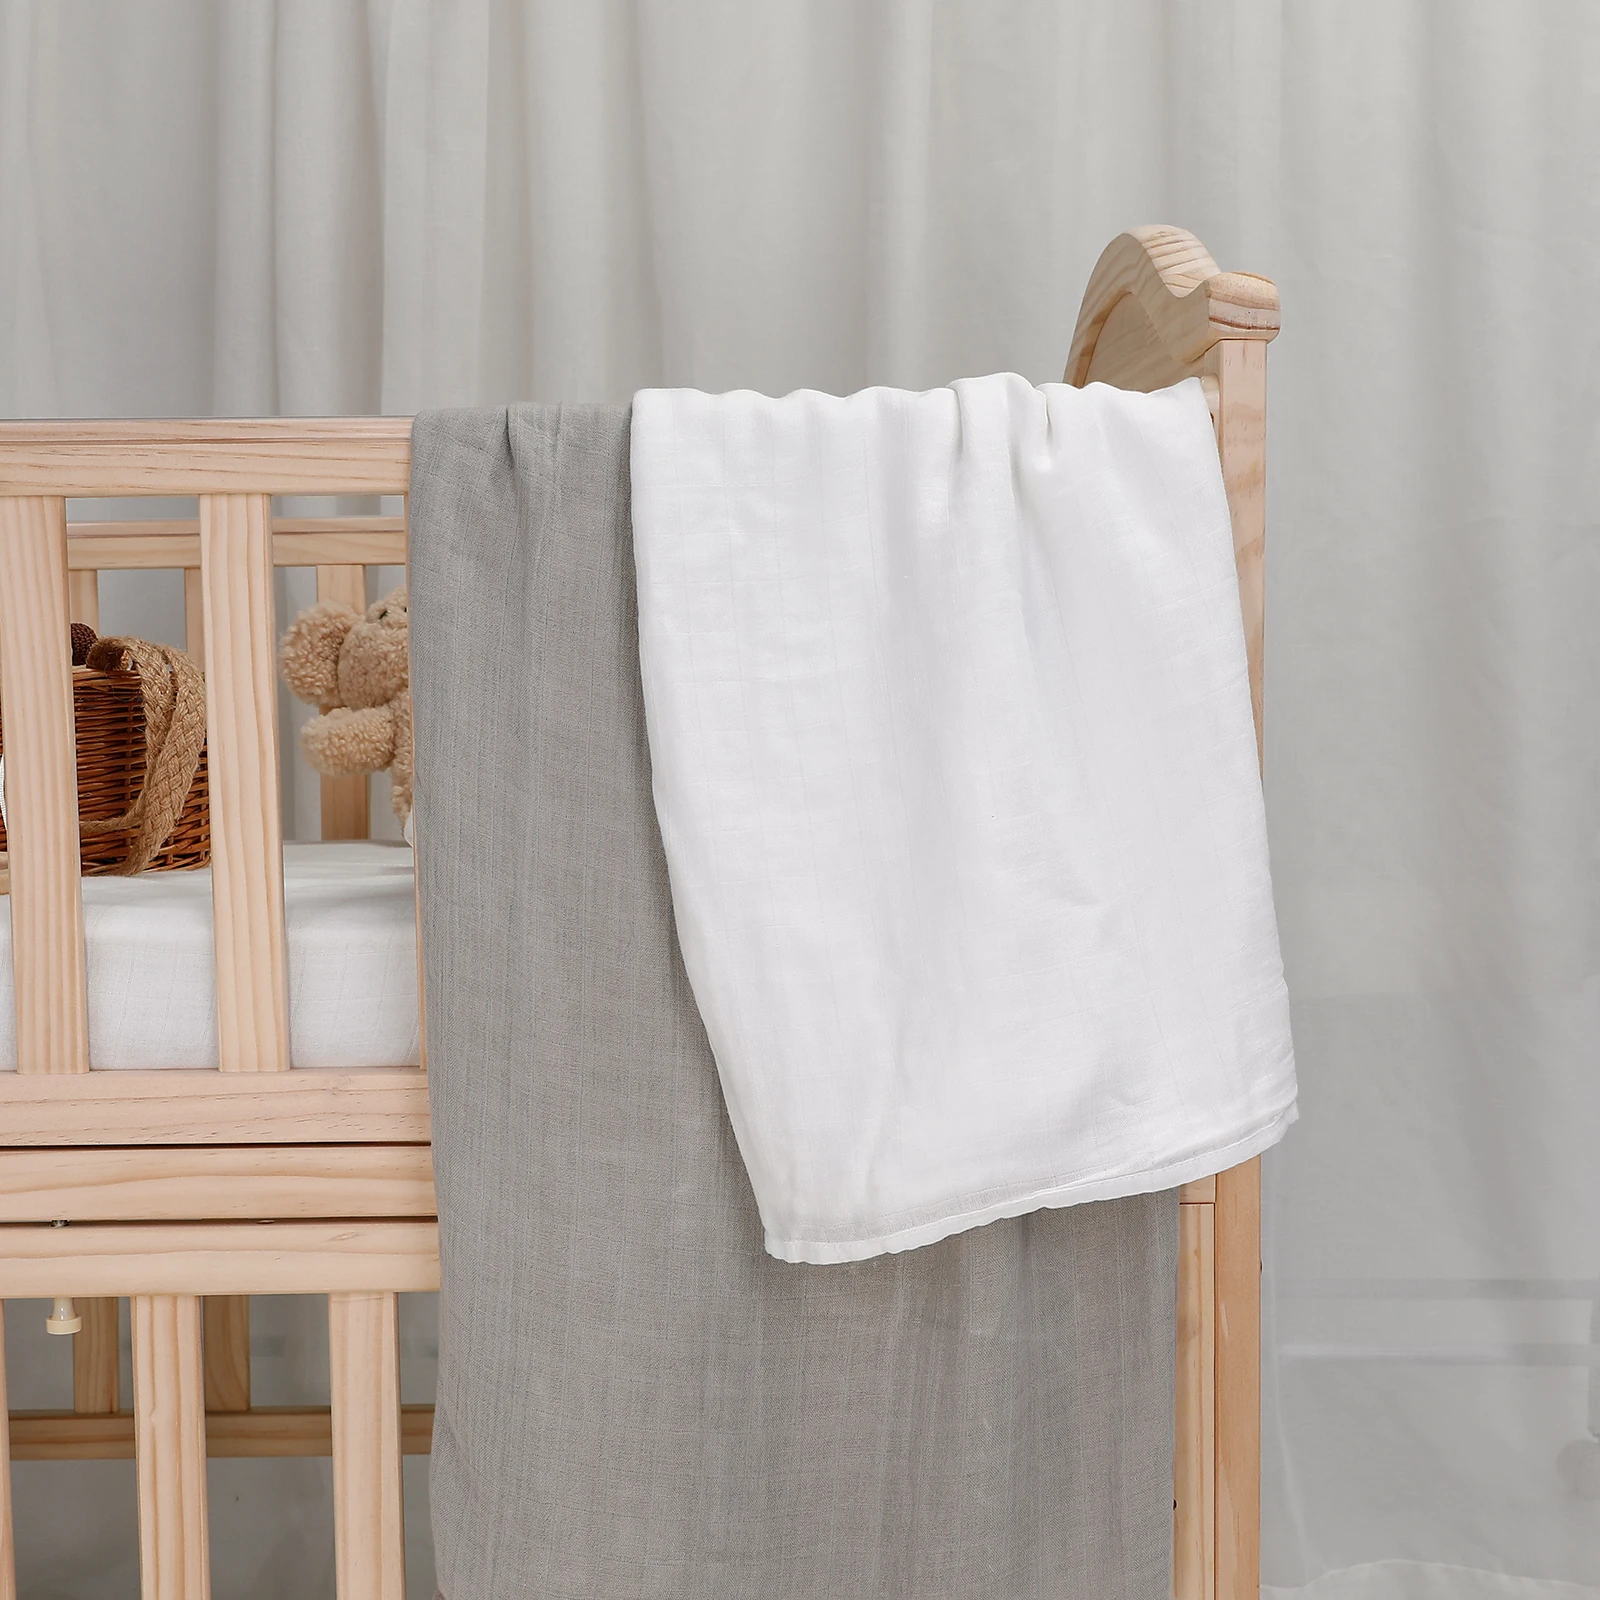 

70% бамбук 20% хлопок детские пеленки мягкое детское одеяло для новорожденных муслиновое Пеленальное Одеяло для новорожденных девочек и мальчиков детское банное полотенце